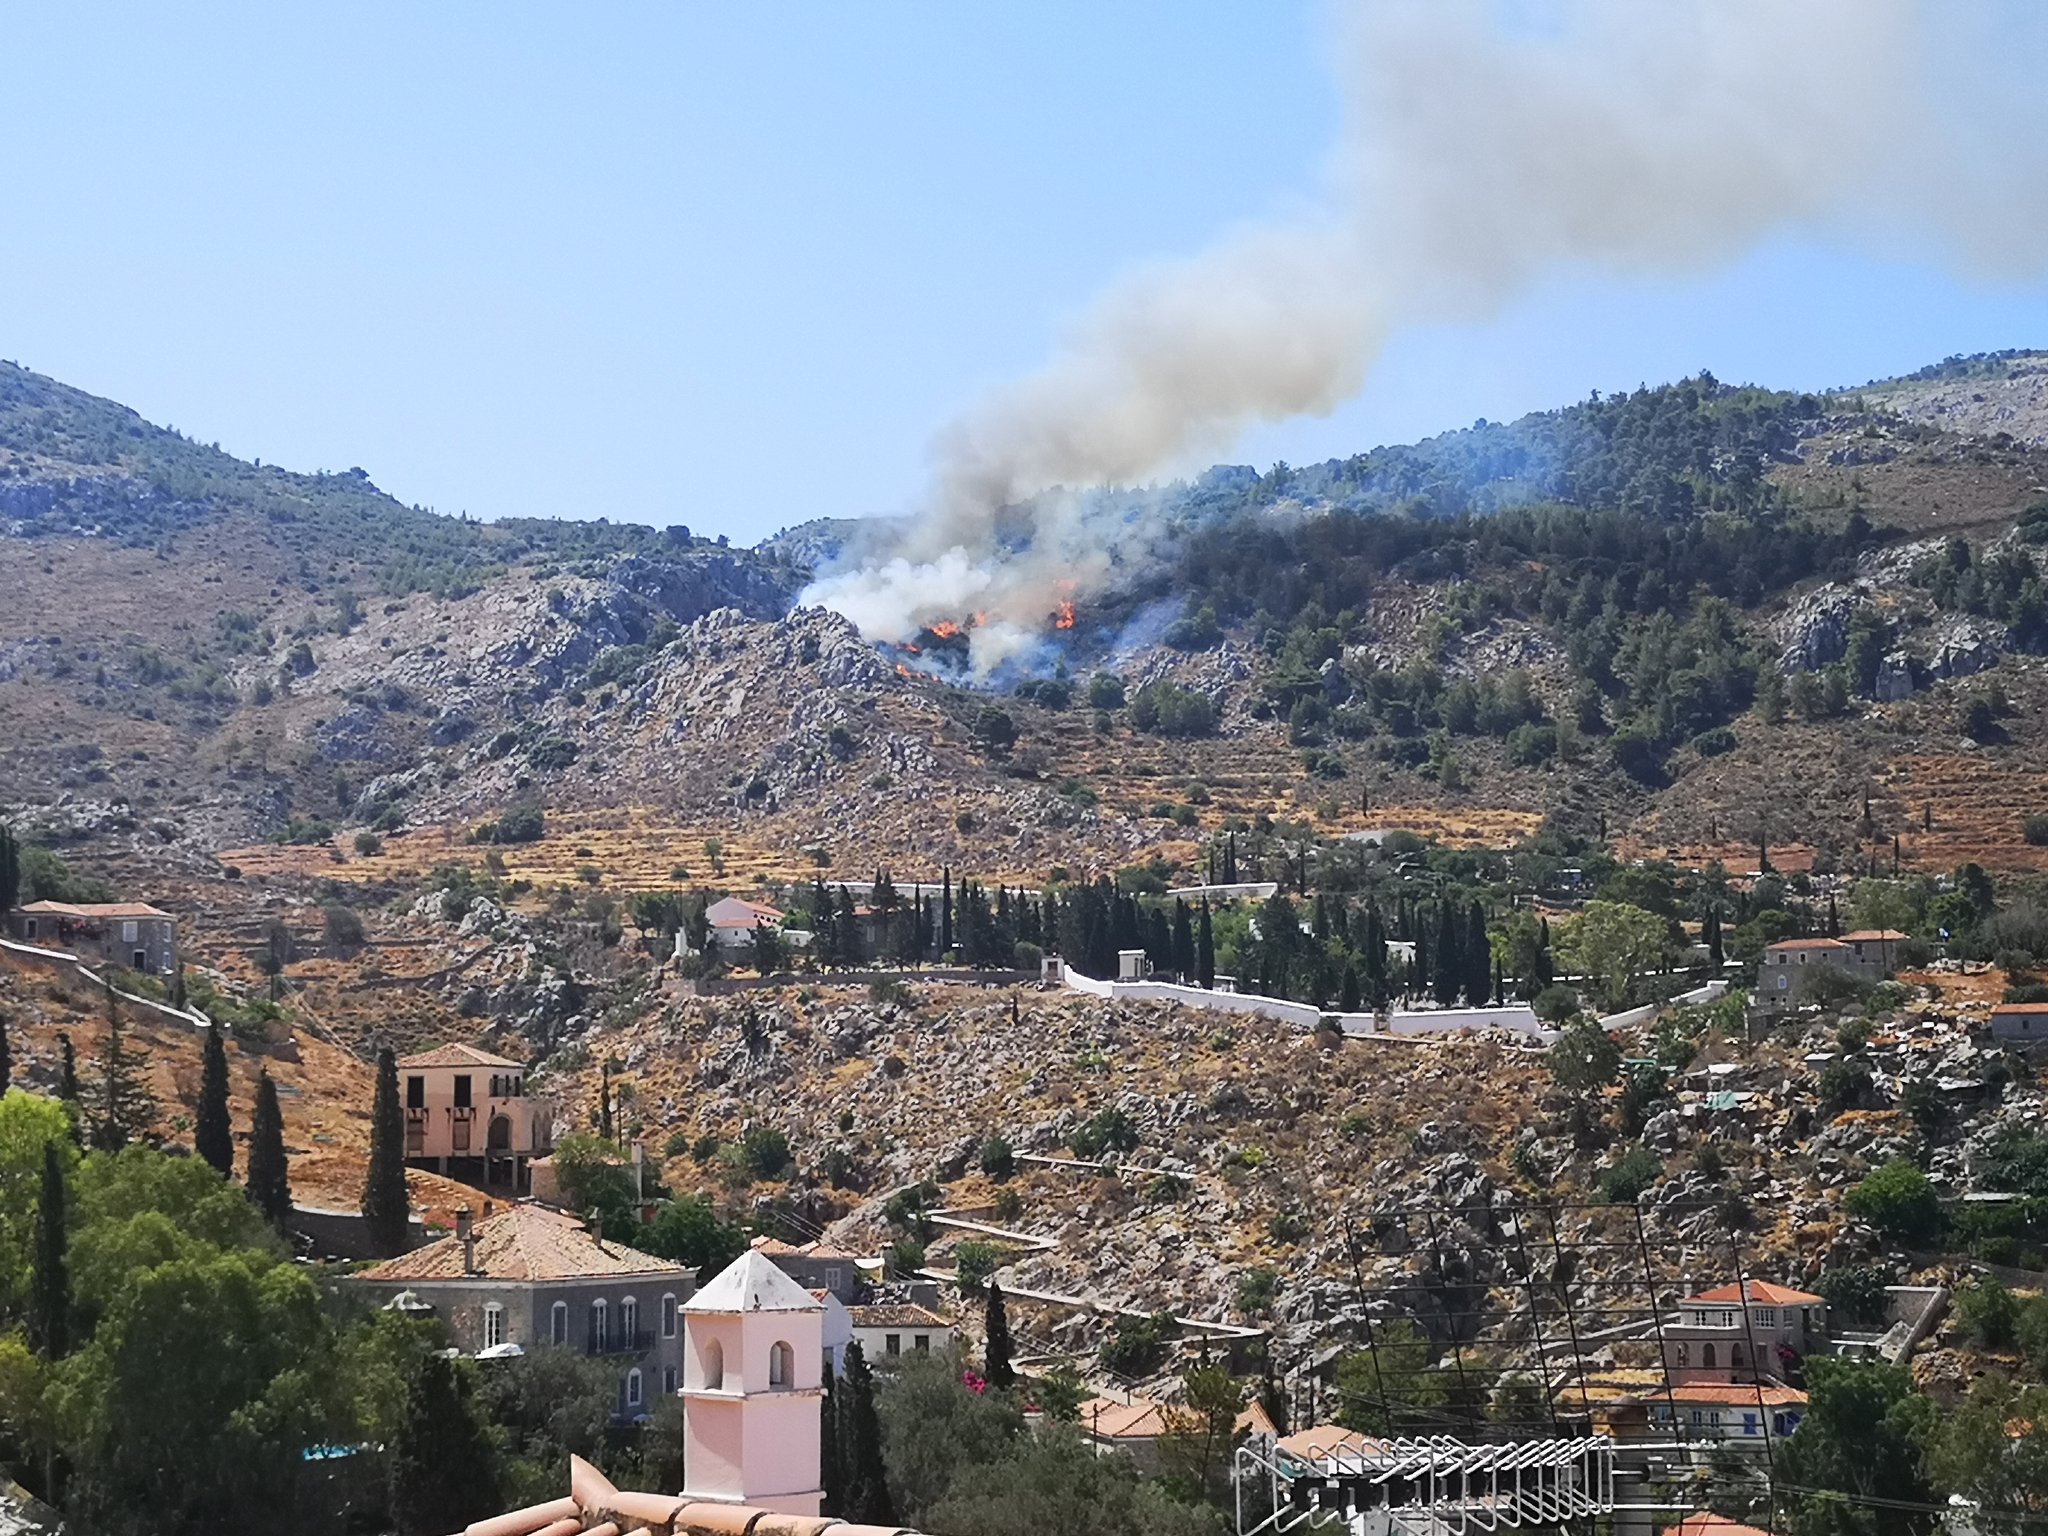 Σε εξέλιξη πυρκαγιά σε δασική έκταση στον Άγιο Κωνσταντίνο Ύδρας (Φωτό)